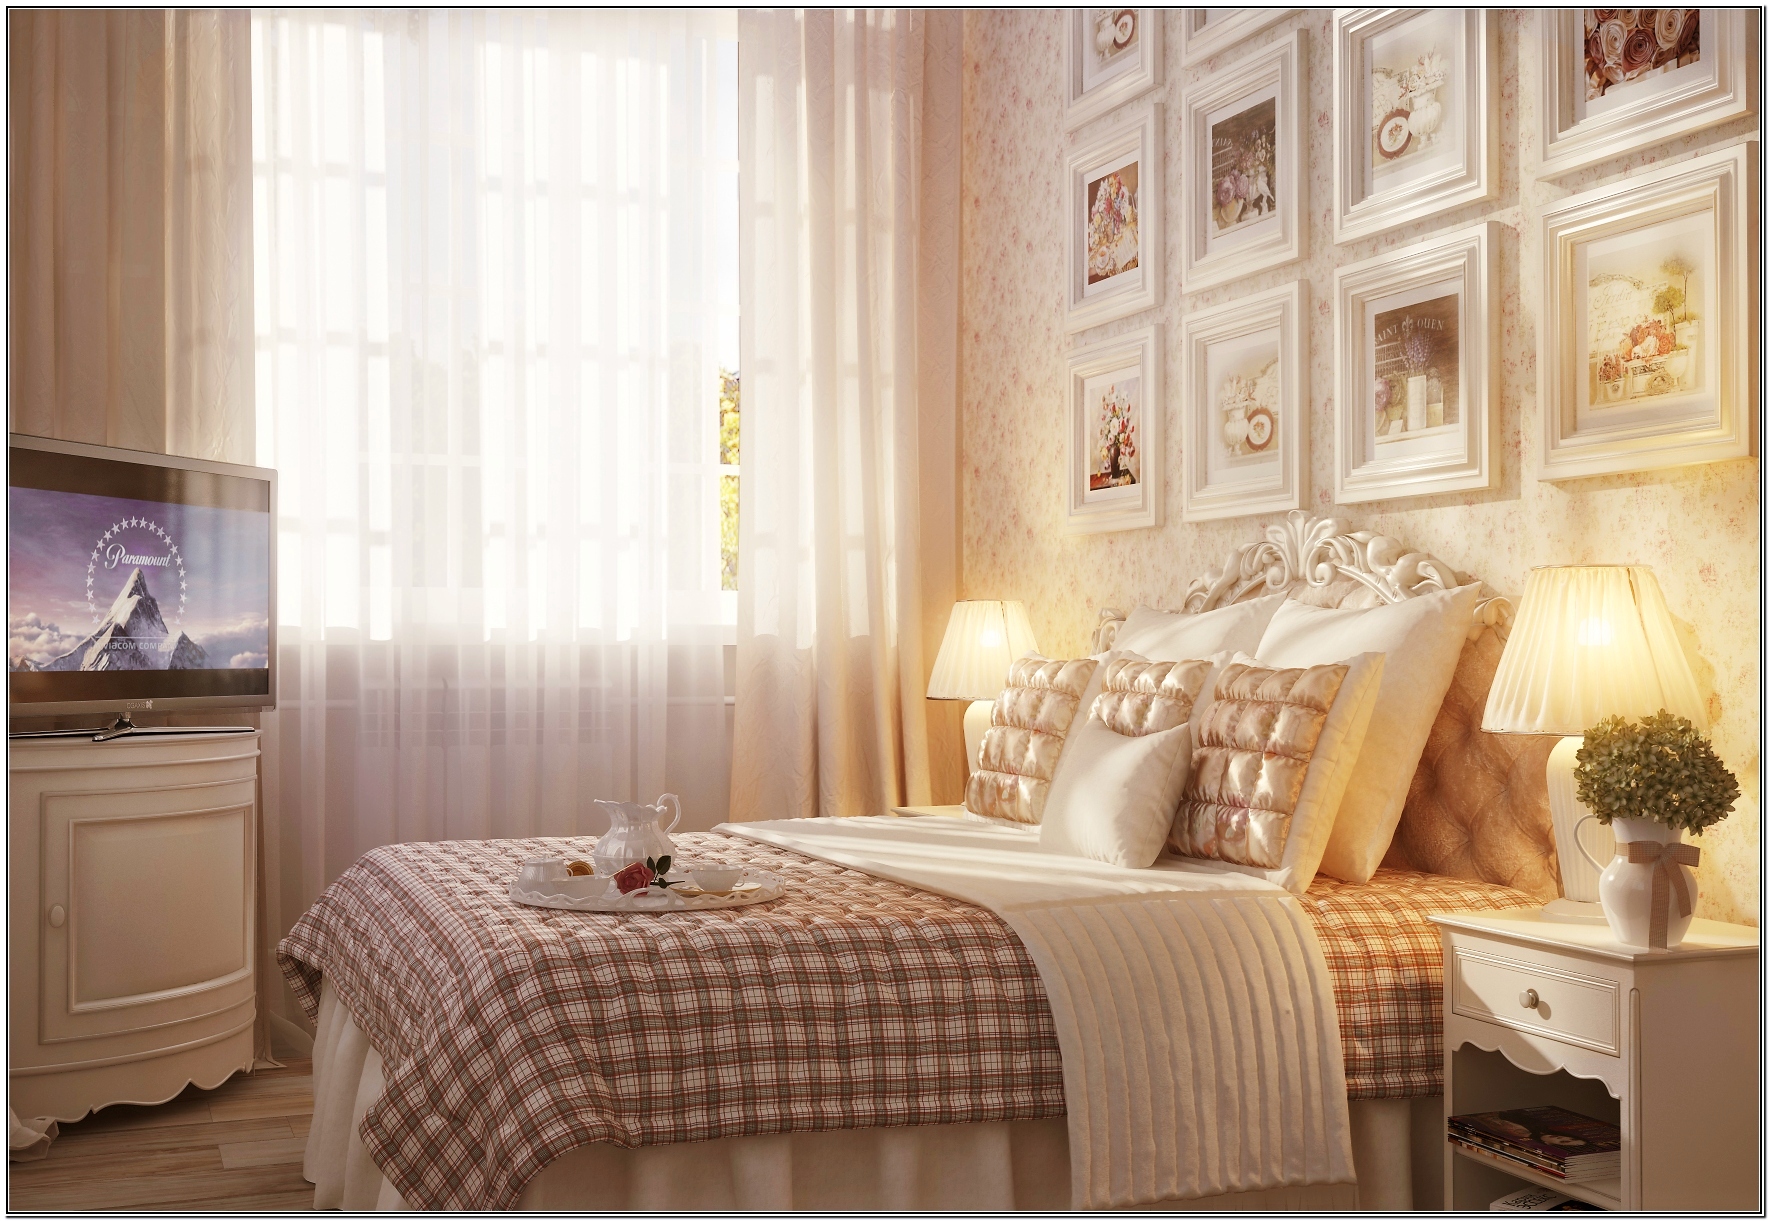 Дизайн интерьера спальни в стиле прованс » Современный дизайн на Vip-1gl